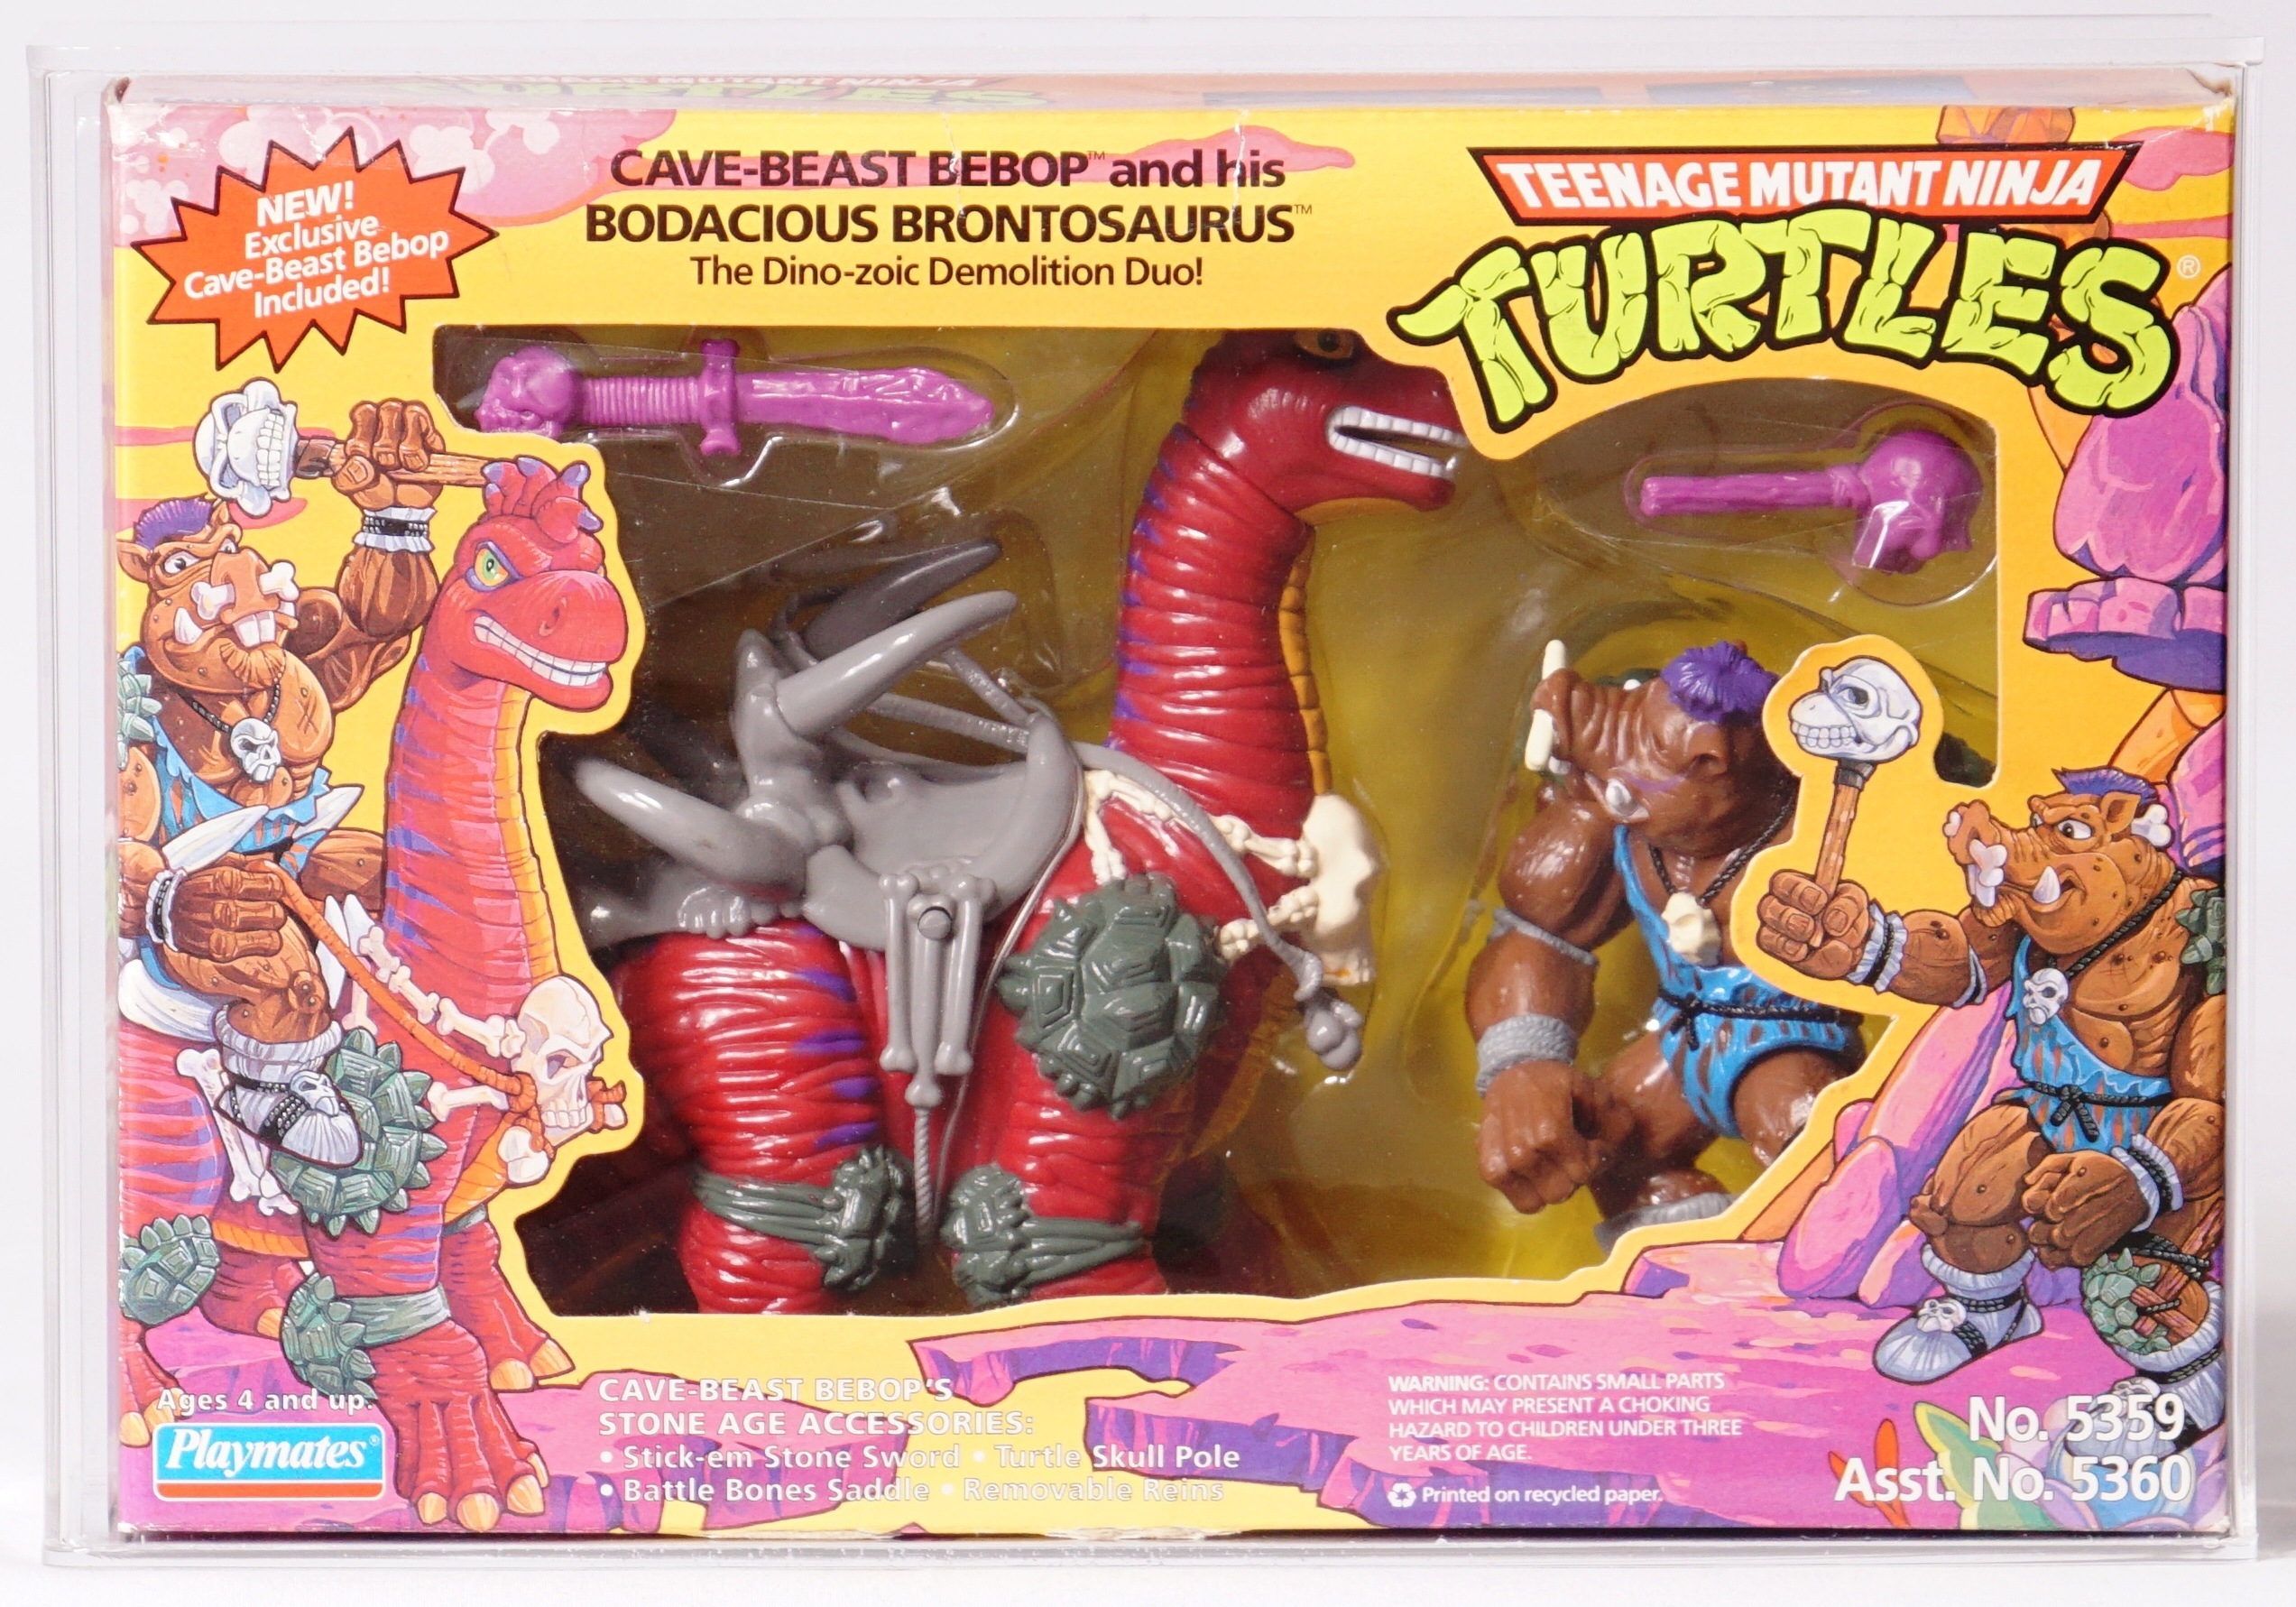 1994 Playmates Teenage Mutant Ninja Turtles Boxed Action Figure -  Cave-Beast Bebop